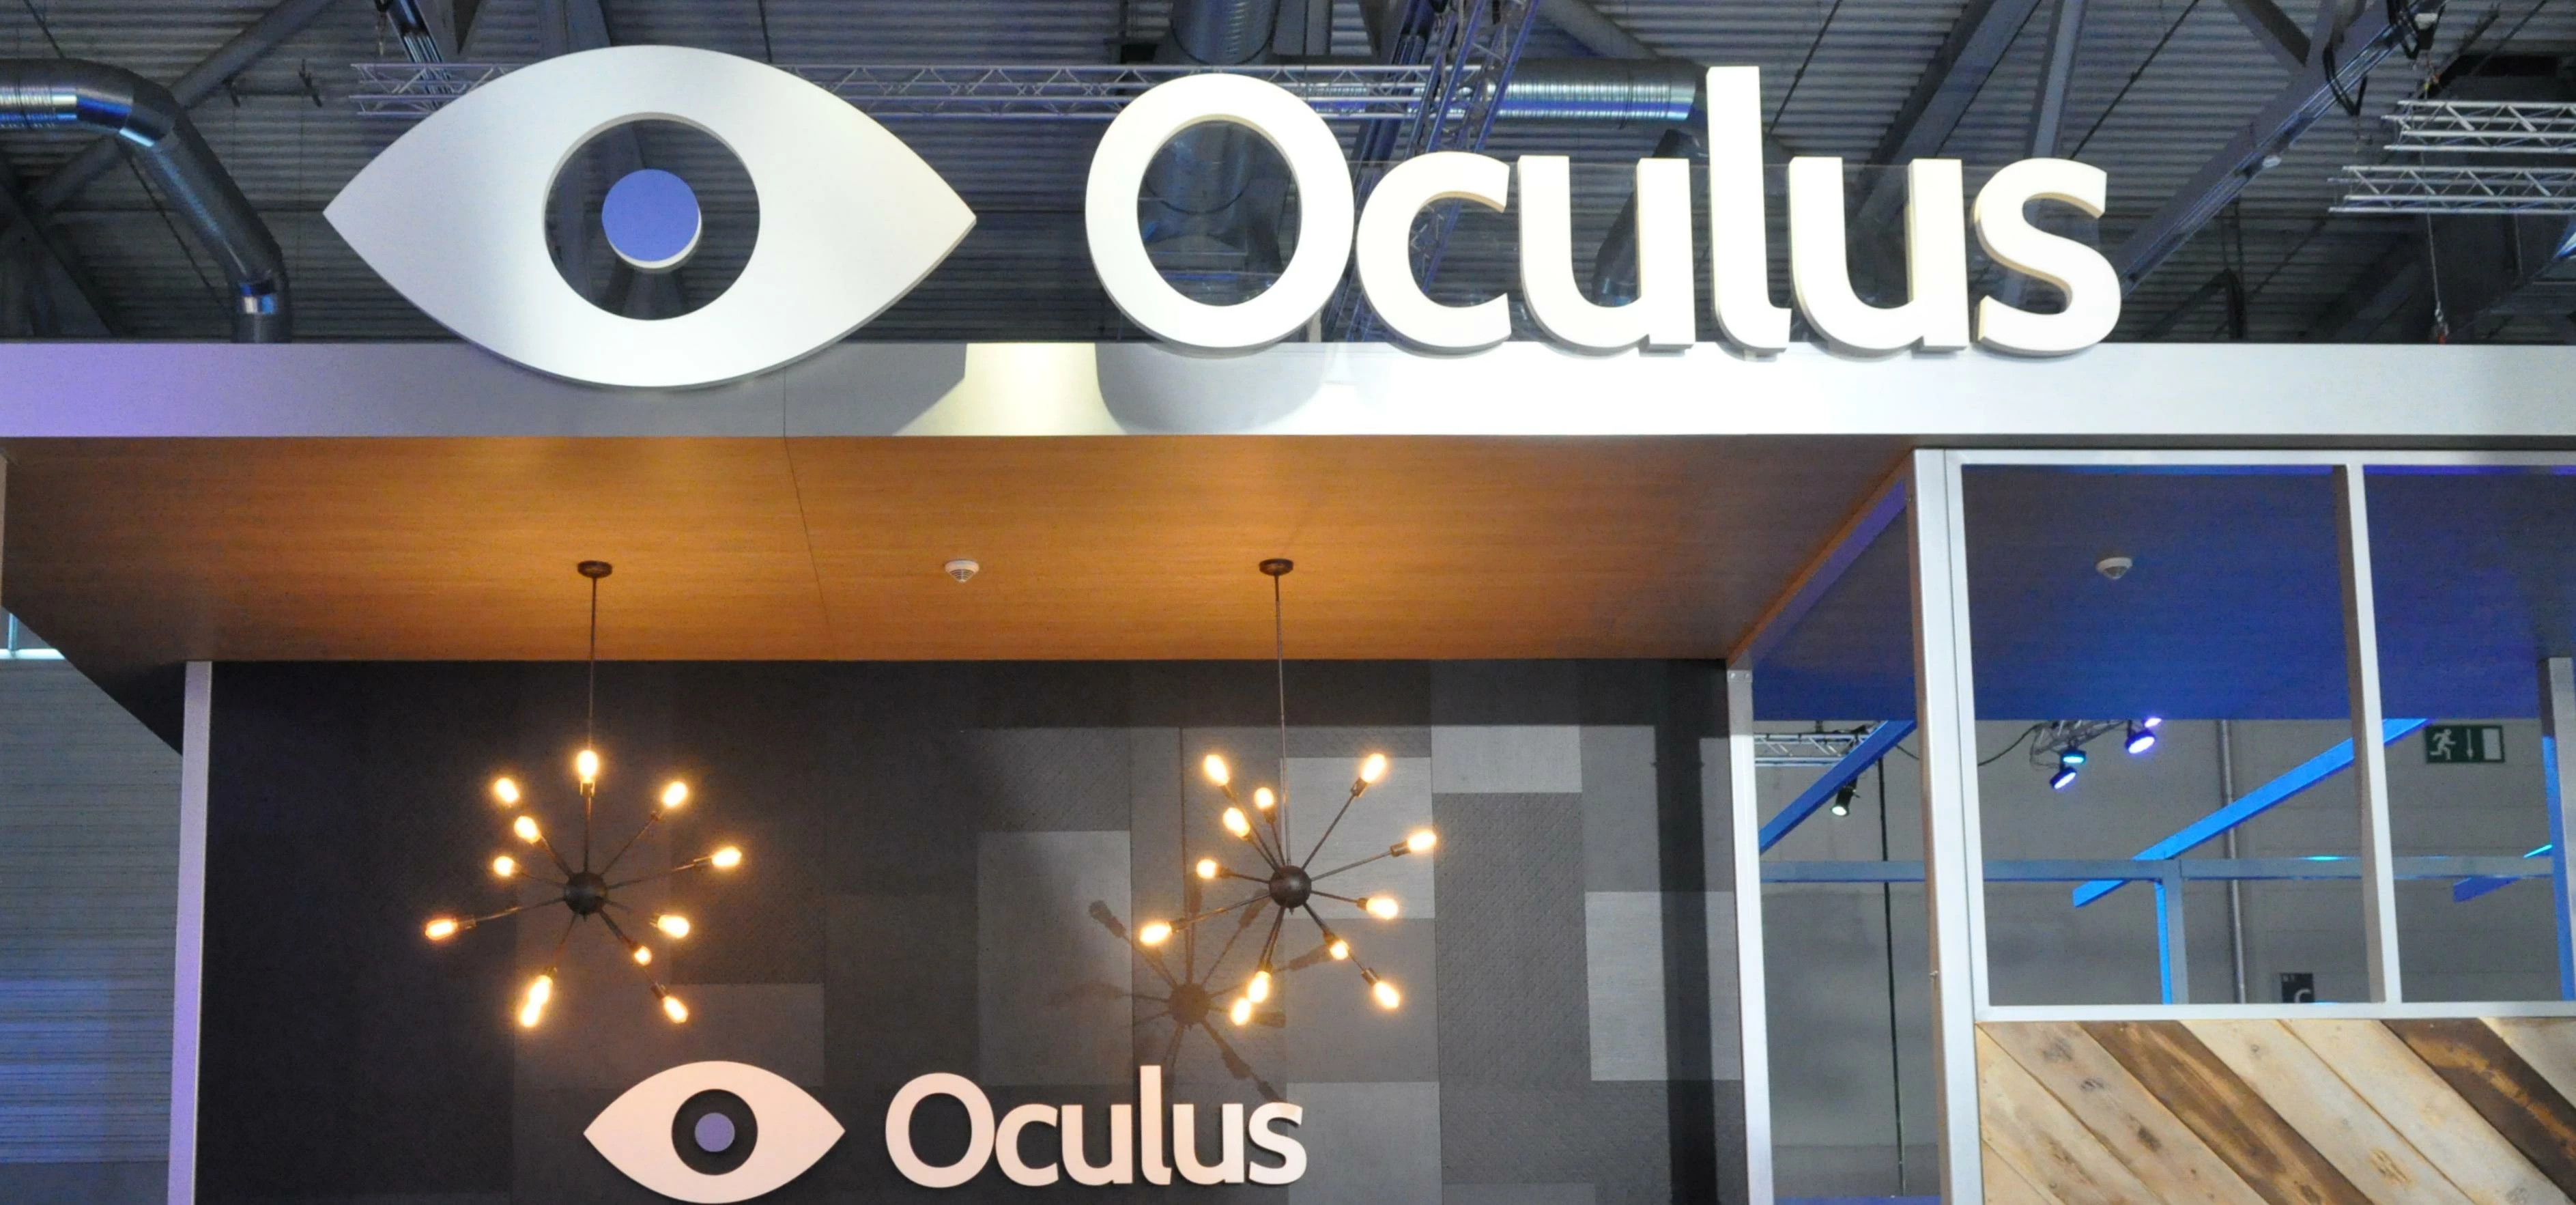 Oculus Rift @ Gamescom 2014